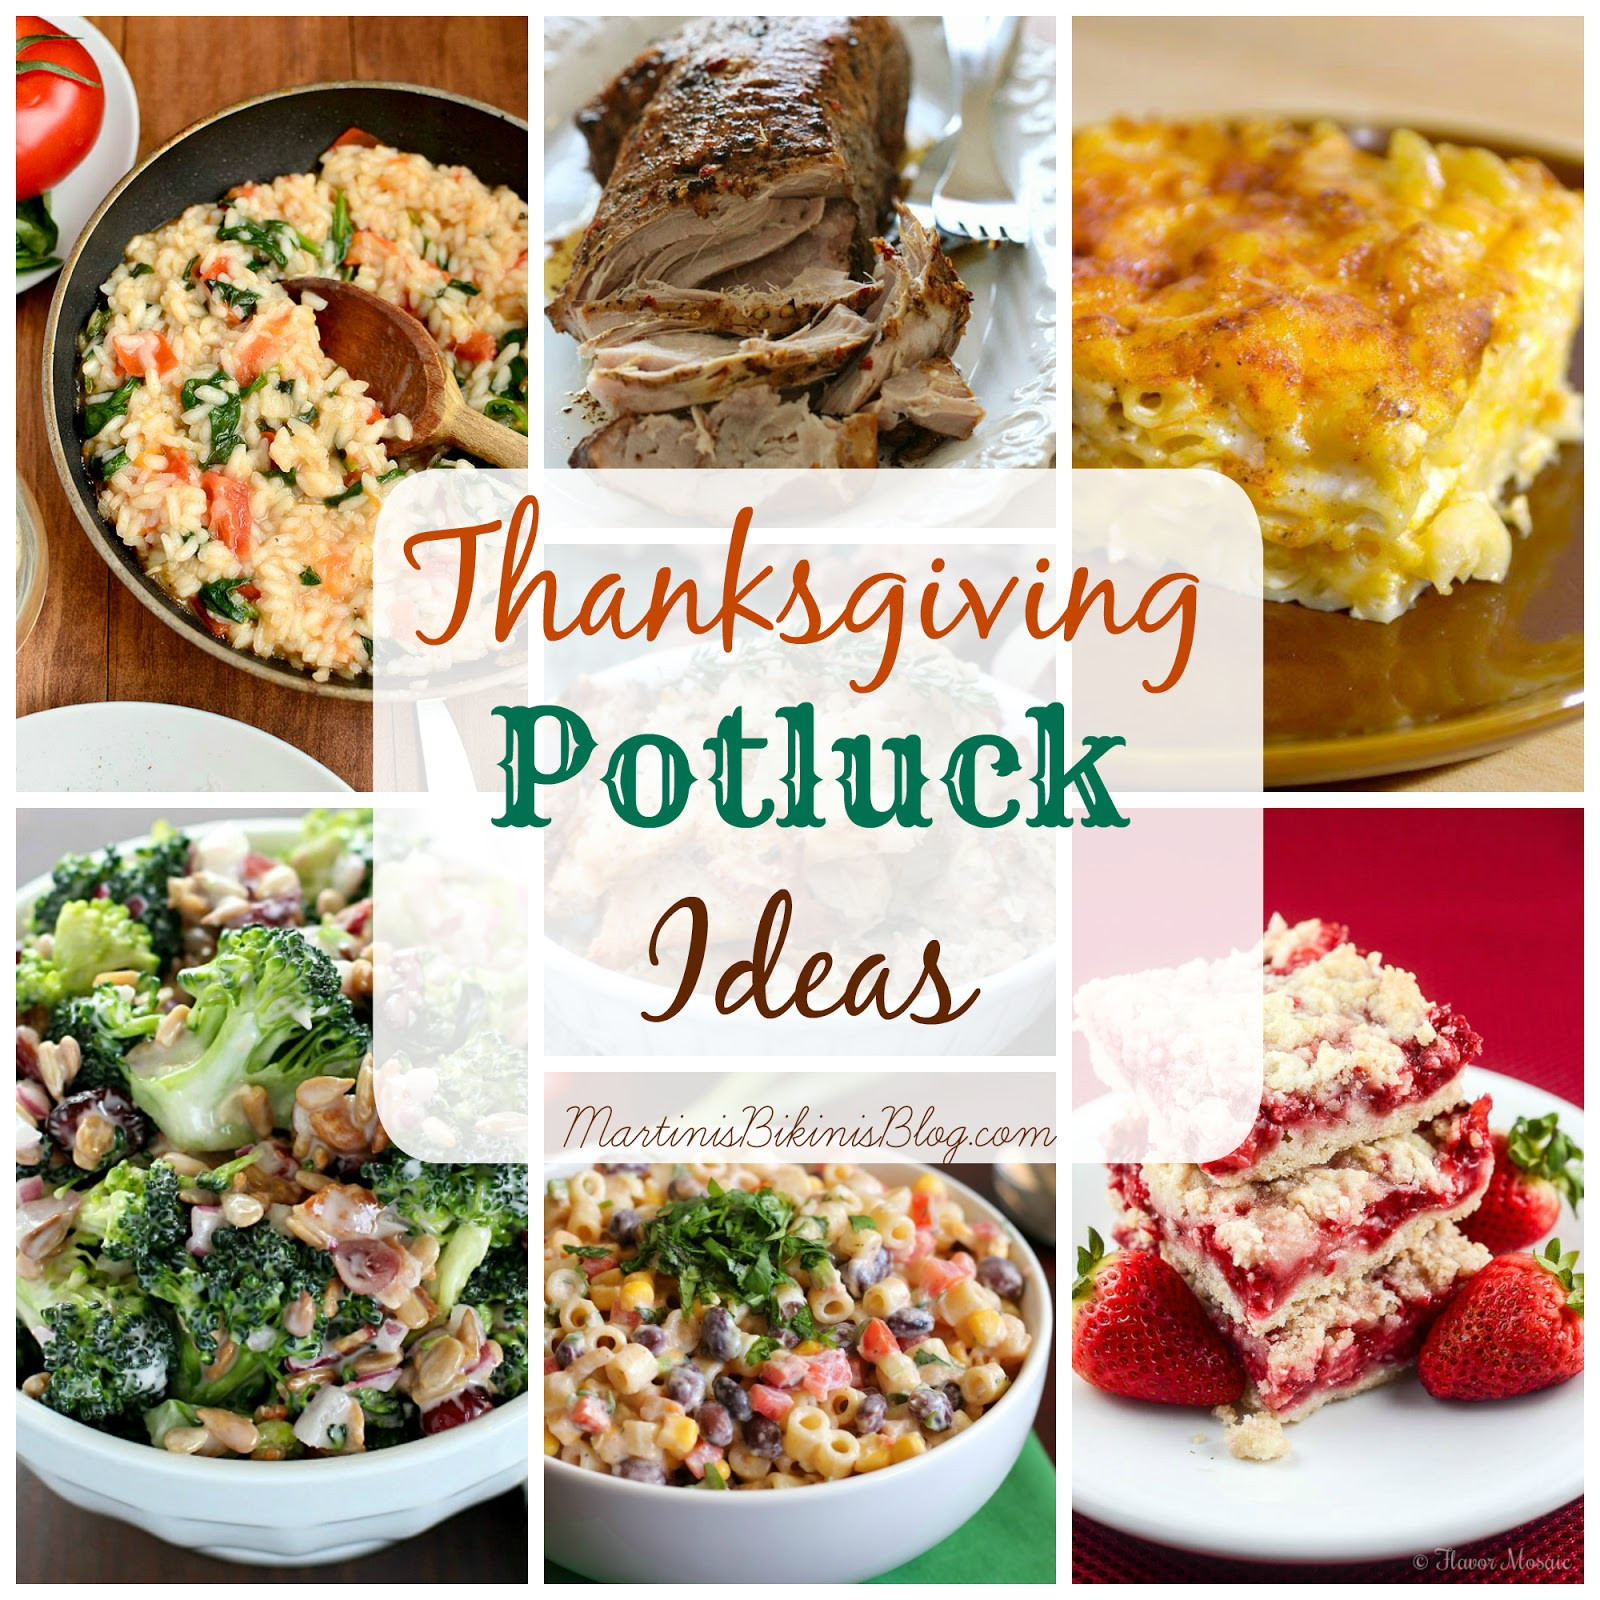 Potluck Dinner Ideas
 Thanksgiving Potluck Dish Ideas Martinis